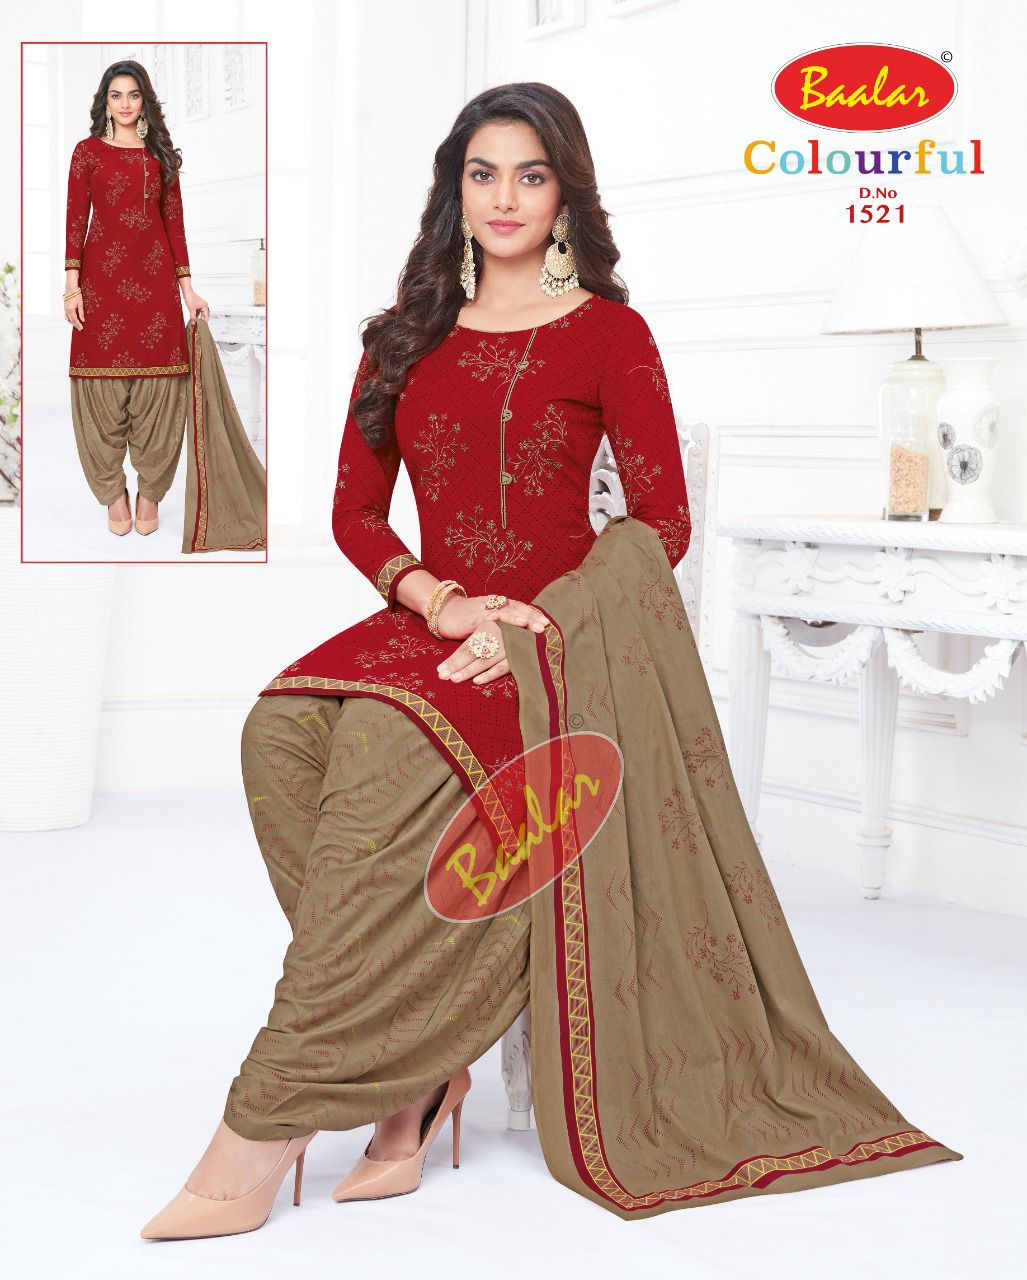 Colourful Vol 15 Baalar Readymade Cotton Patiyala Suits